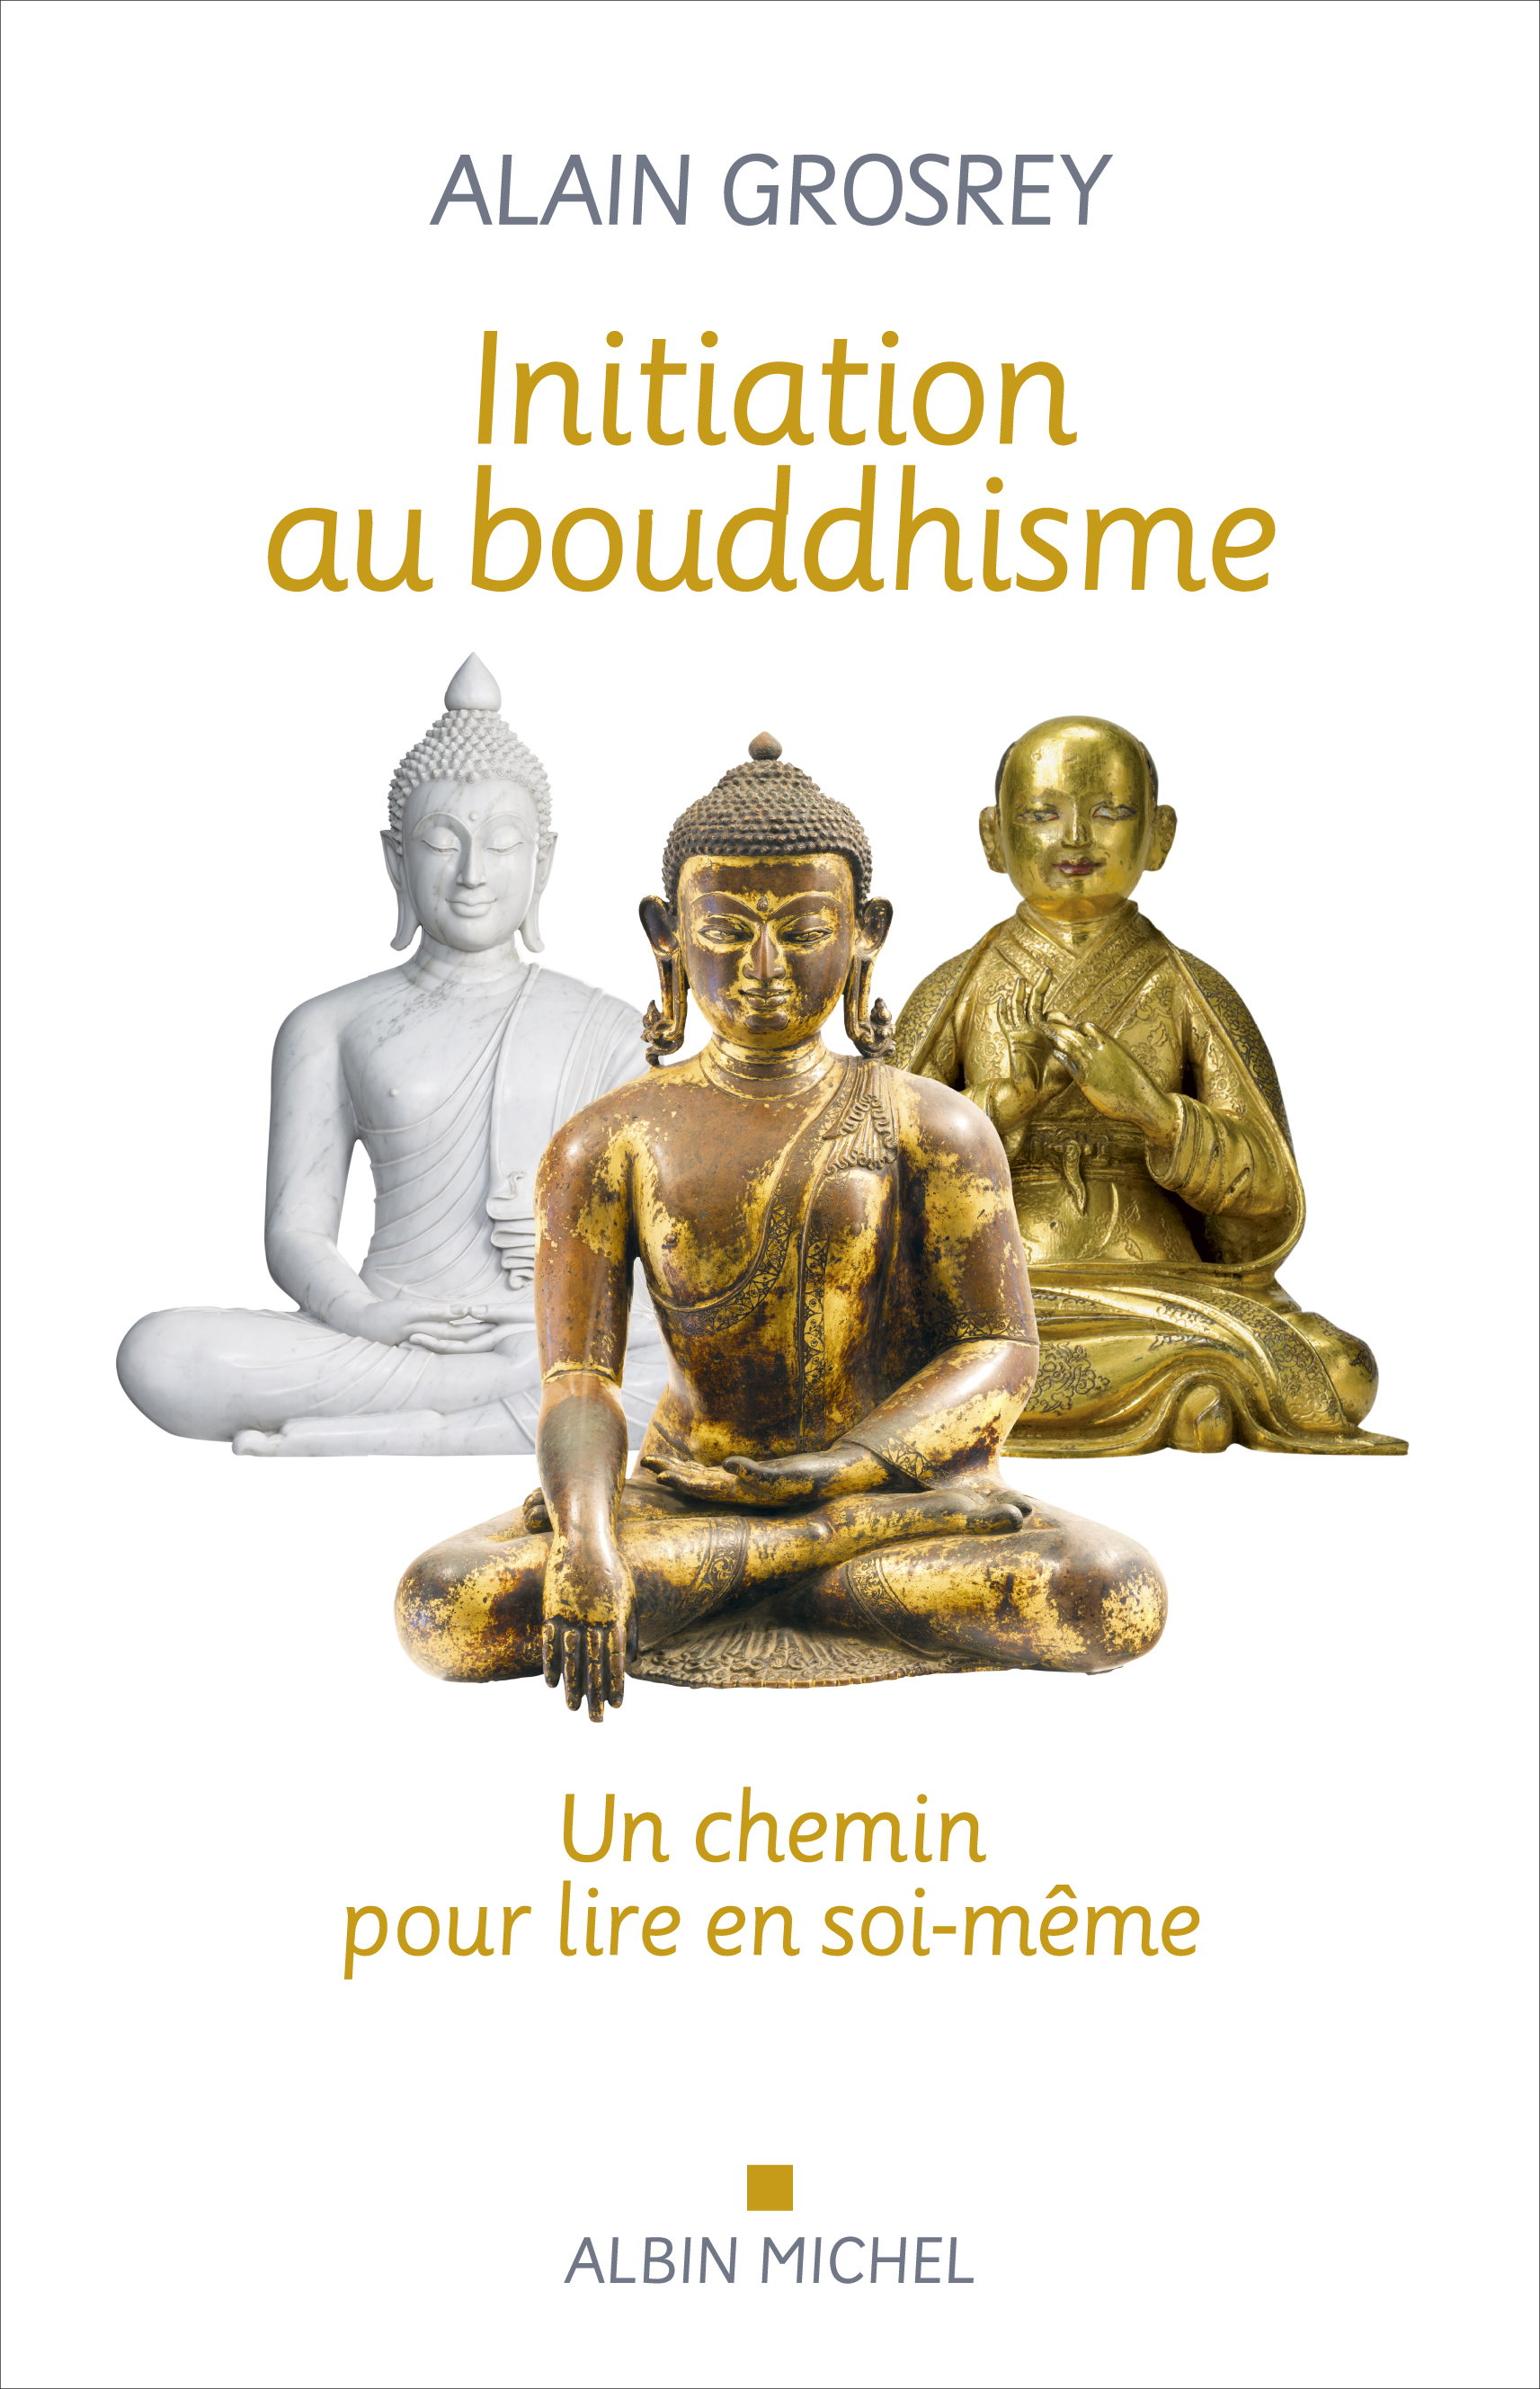 Couverture du livre Initiation au bouddhisme